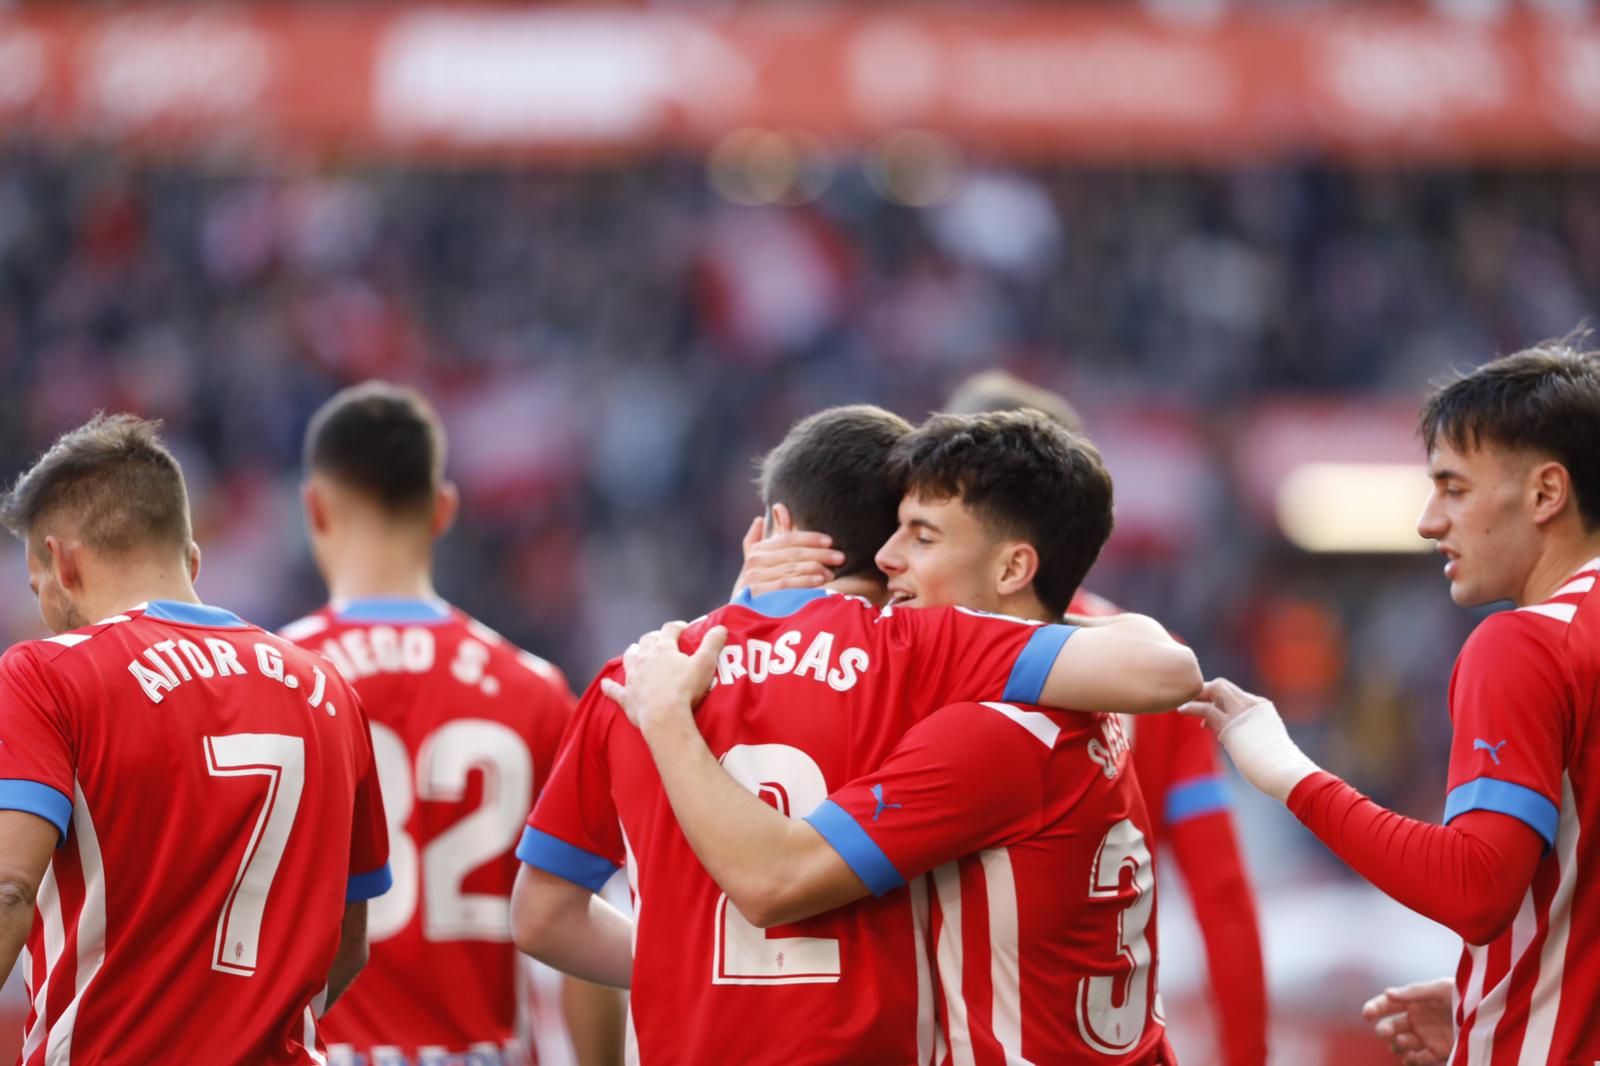 EN IMÁGENES: El encuentro entre el Sporting y el Real Zaragoza